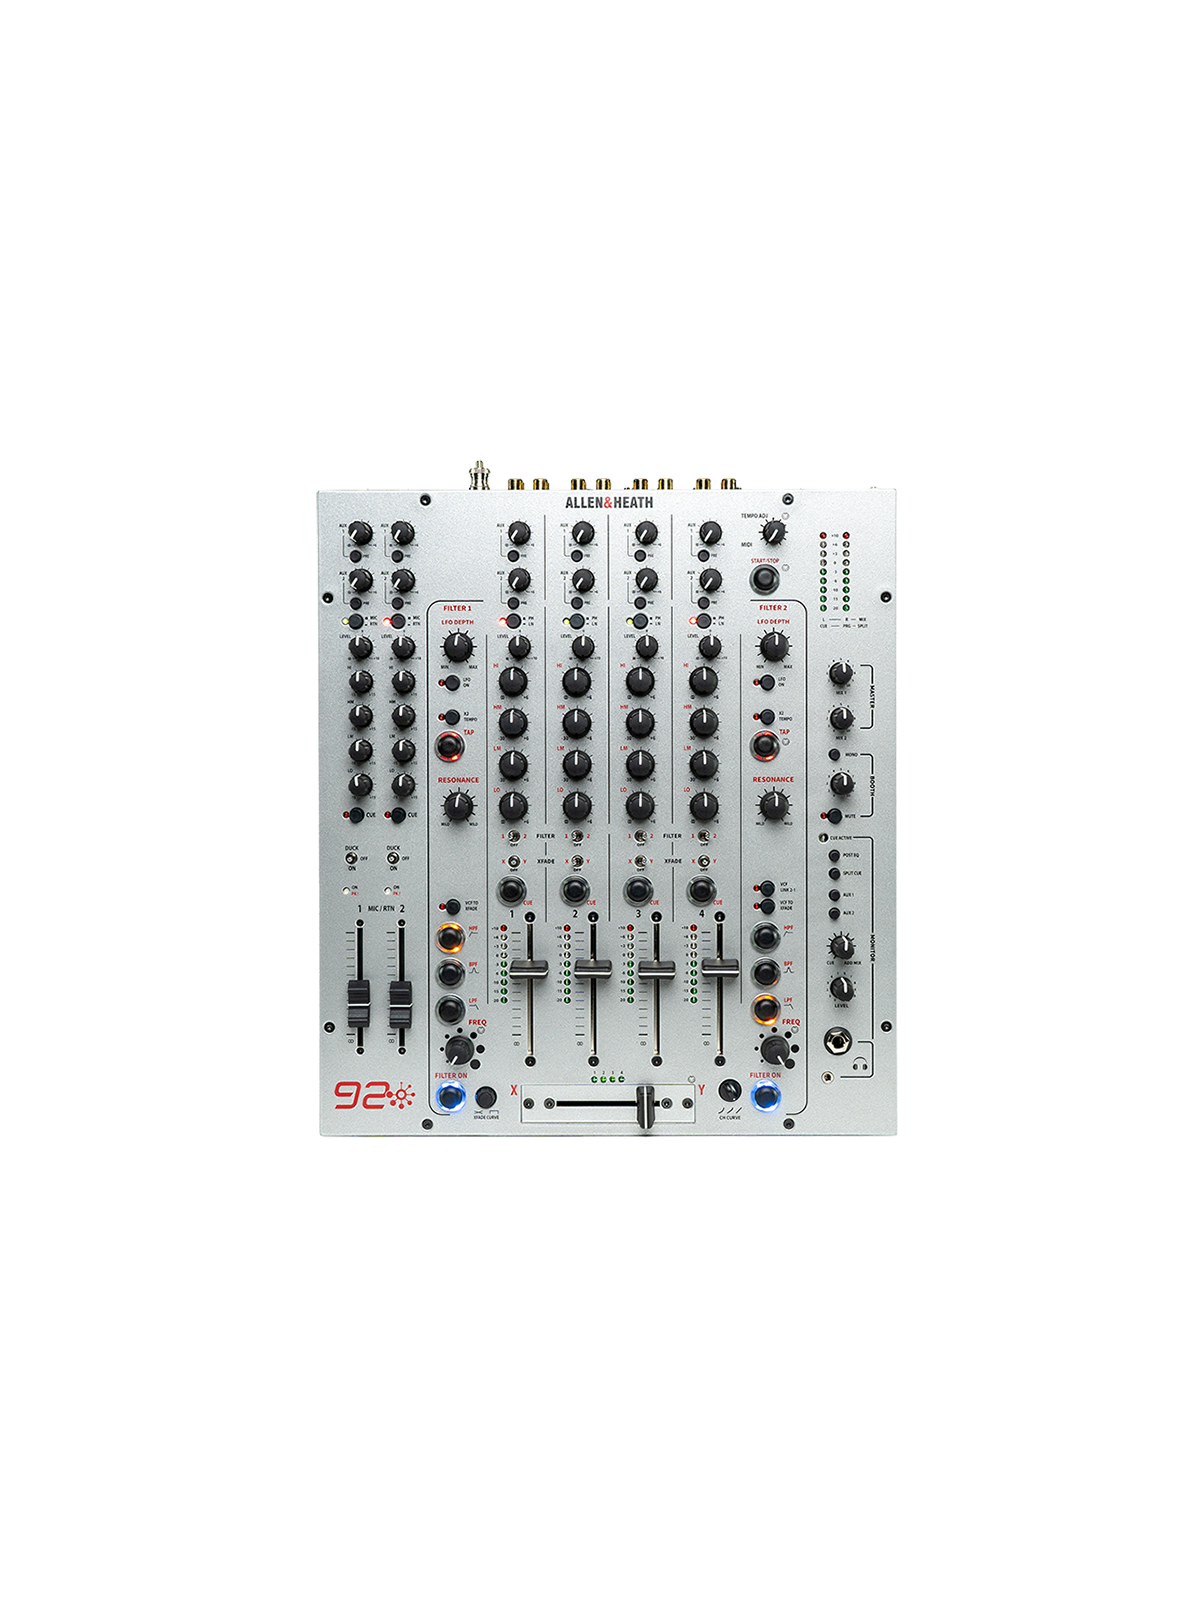 Console de Mixage Dj Allen & Heath - XONE-92-LTD
Consoles Club - 6 voies stéréo, 2 out stéréo Limited Edition